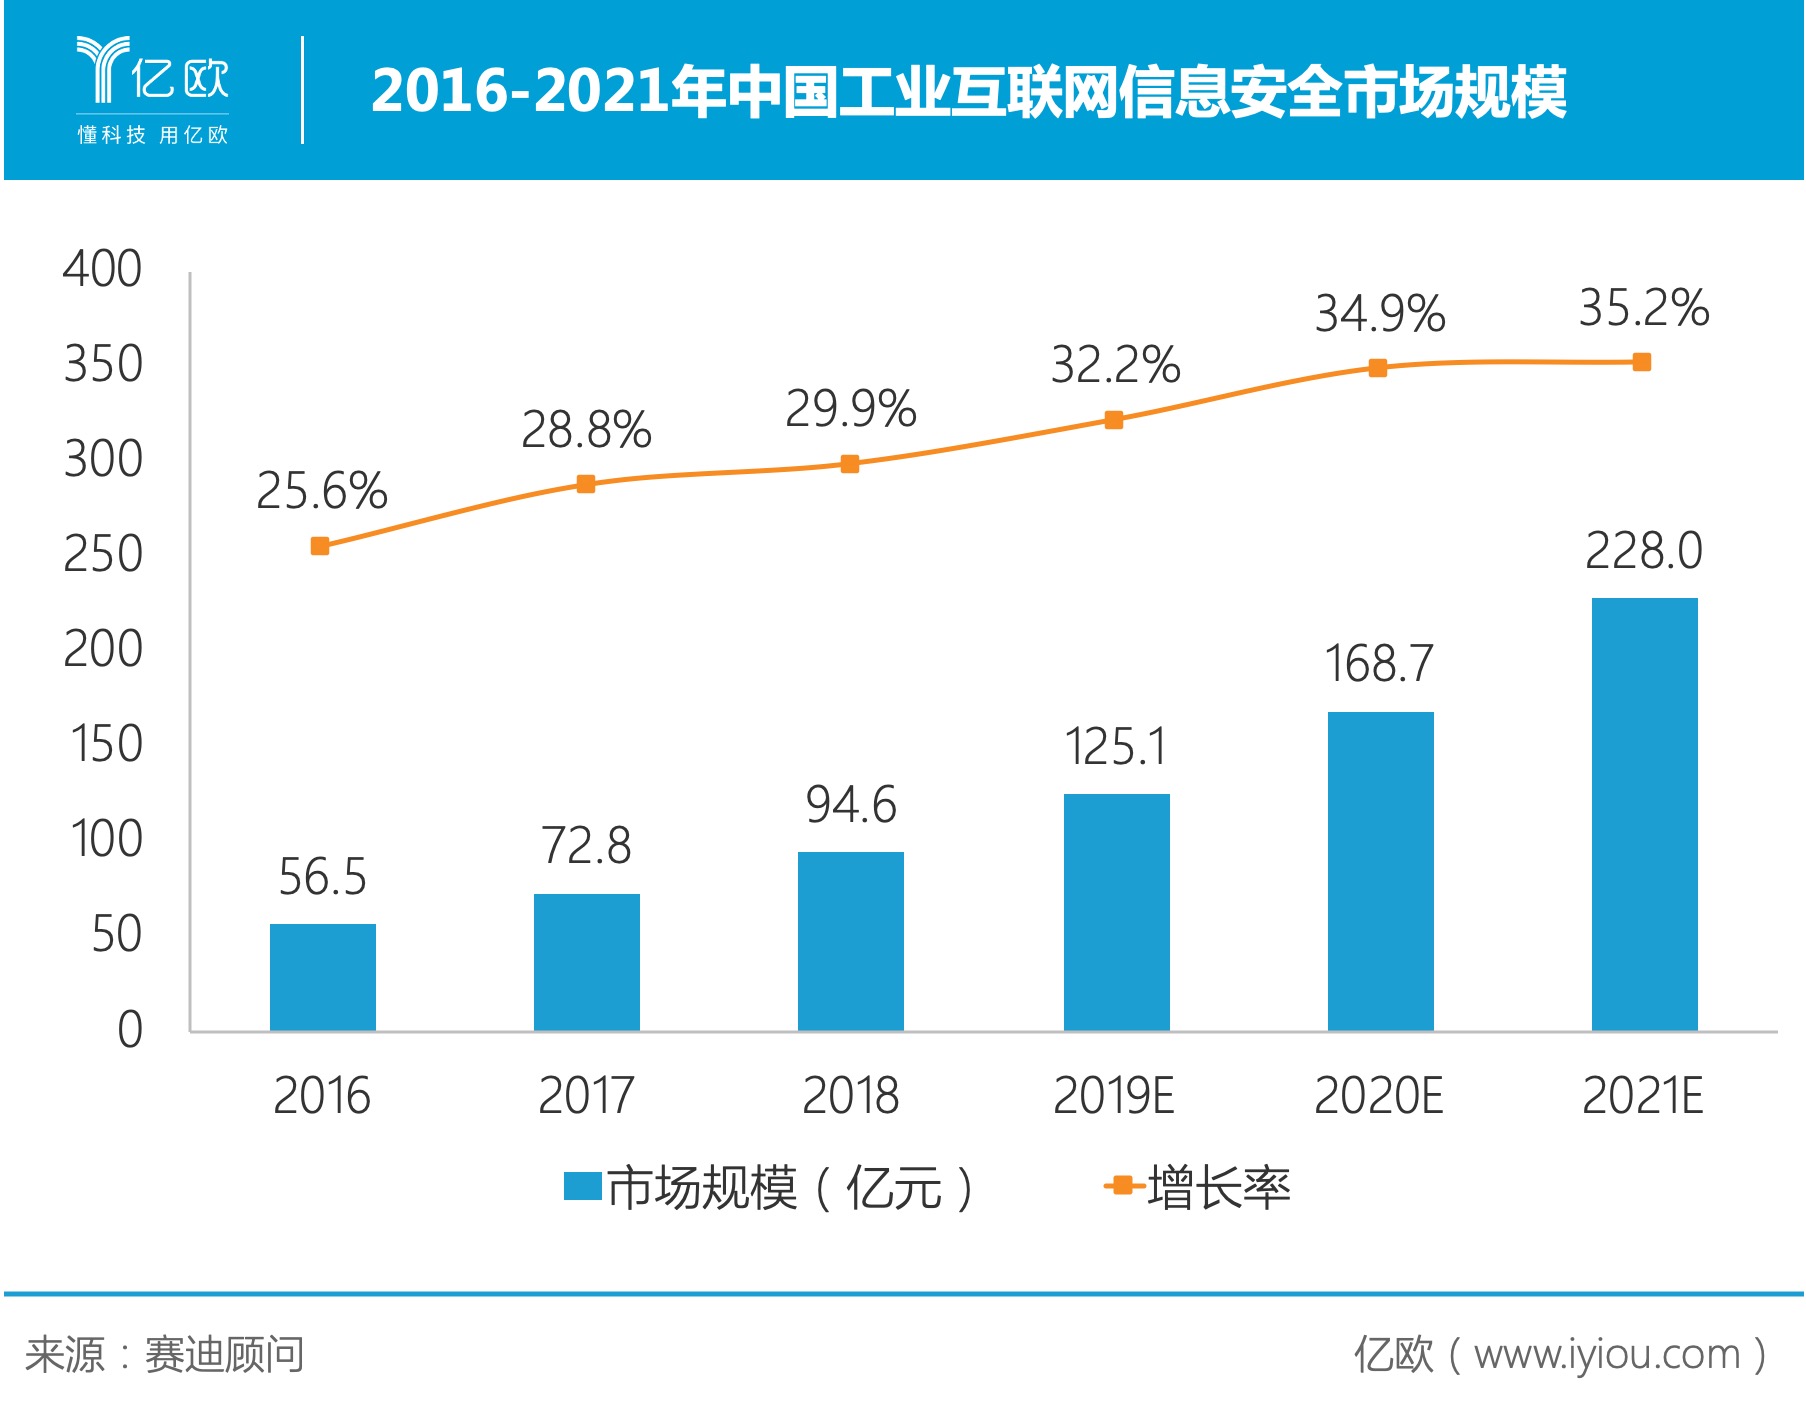 2016-2021年中国工业互联网信息安全市场规模